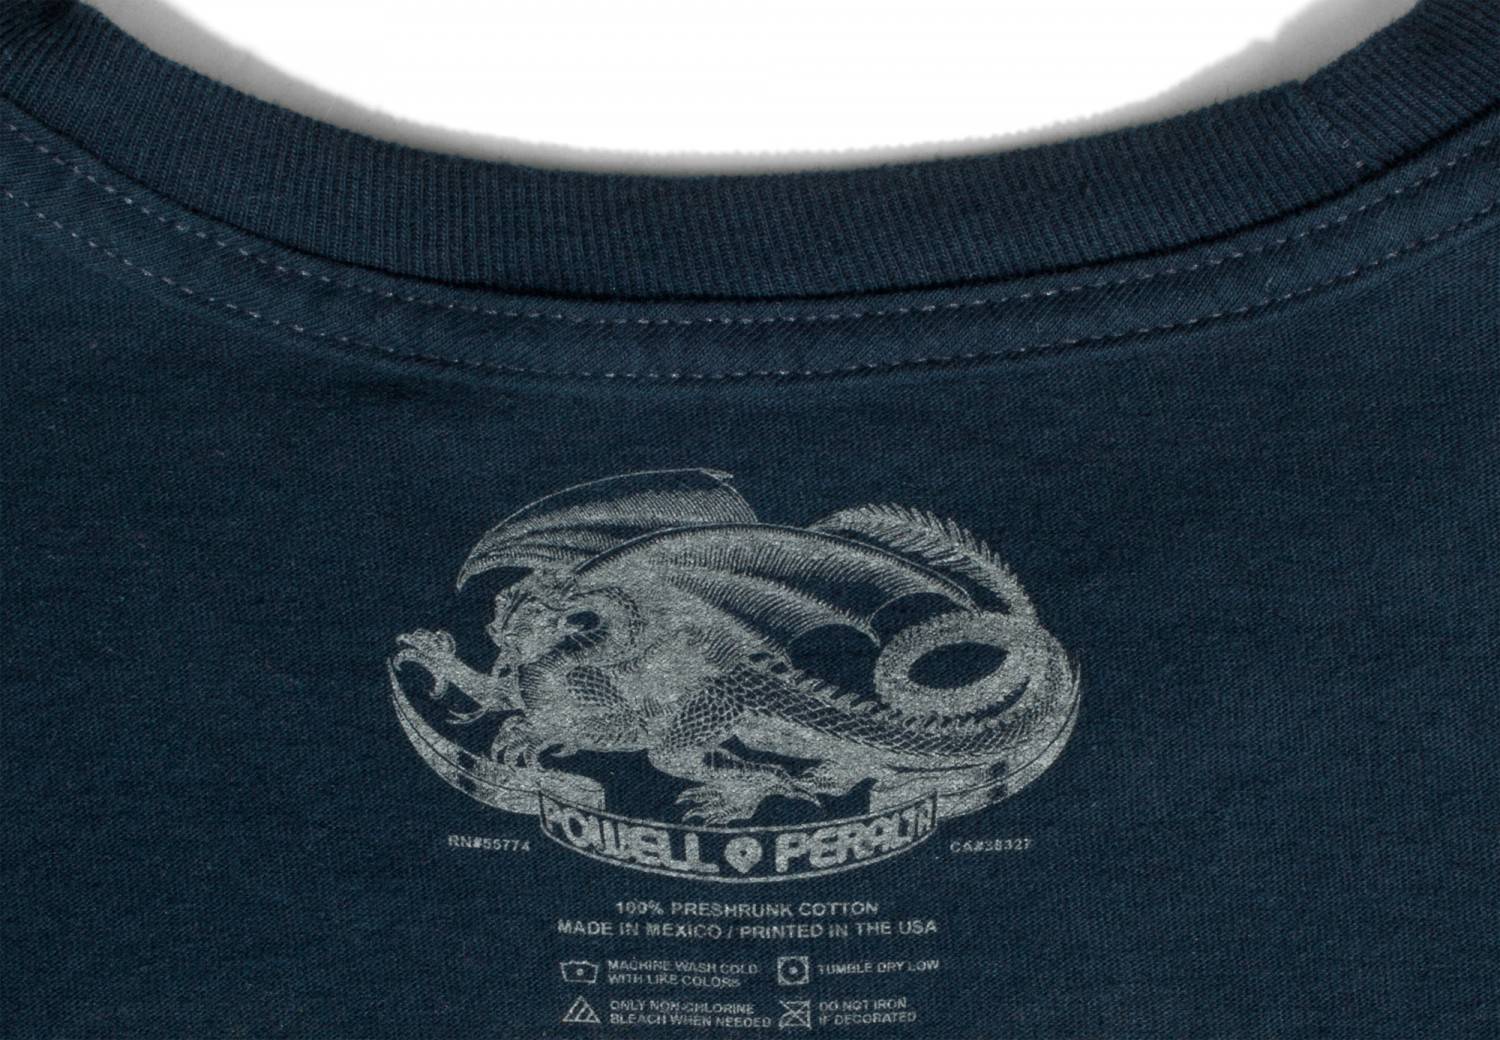 Powell Peralta Vato Rat T-shirt navy - SkateTillDeath.com